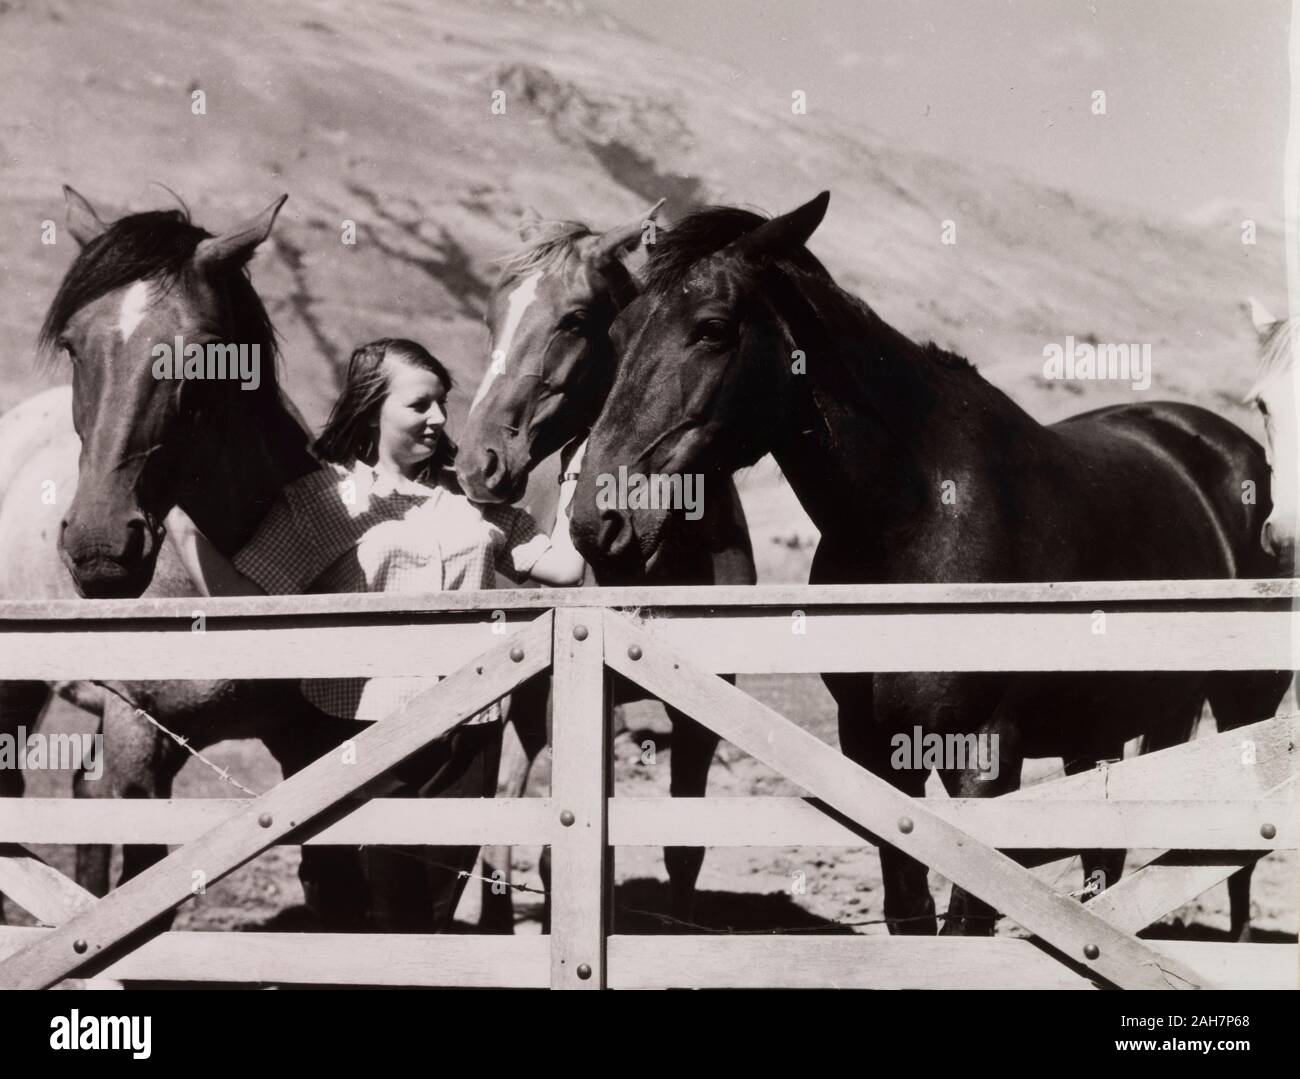 Nuova Zelanda, stazione di pecora il proprietario e la sua pecora HorsesA proprietario della stazione è circondato dai suoi quattro cavalli di un gate, alla stazione Glenrock, Rakaia Valley, Isola del Sud.Caption legge DAPHNE ENSOR e i suoi cavalli, 1966. 2005/010/1/16/44. Foto Stock